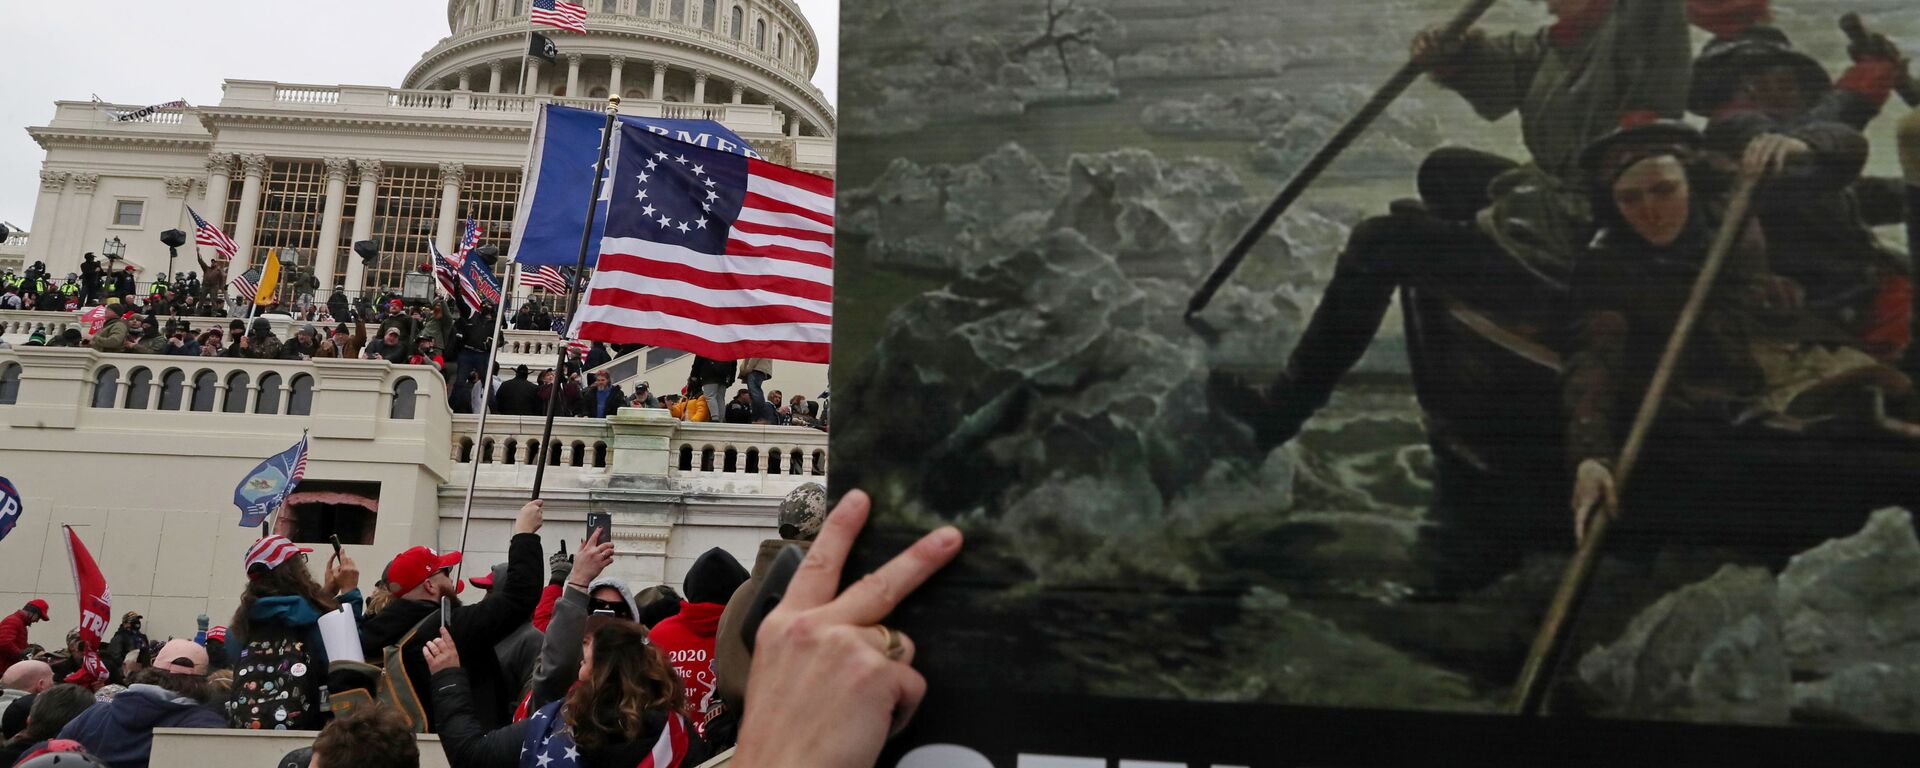 Плакат с картиной Вашингтонский переход через Делавэр в руках сторонников президента США Дональда Трампа во время штурма здания Капитолия США в Вашингтоне - Sputnik Узбекистан, 1920, 12.01.2021